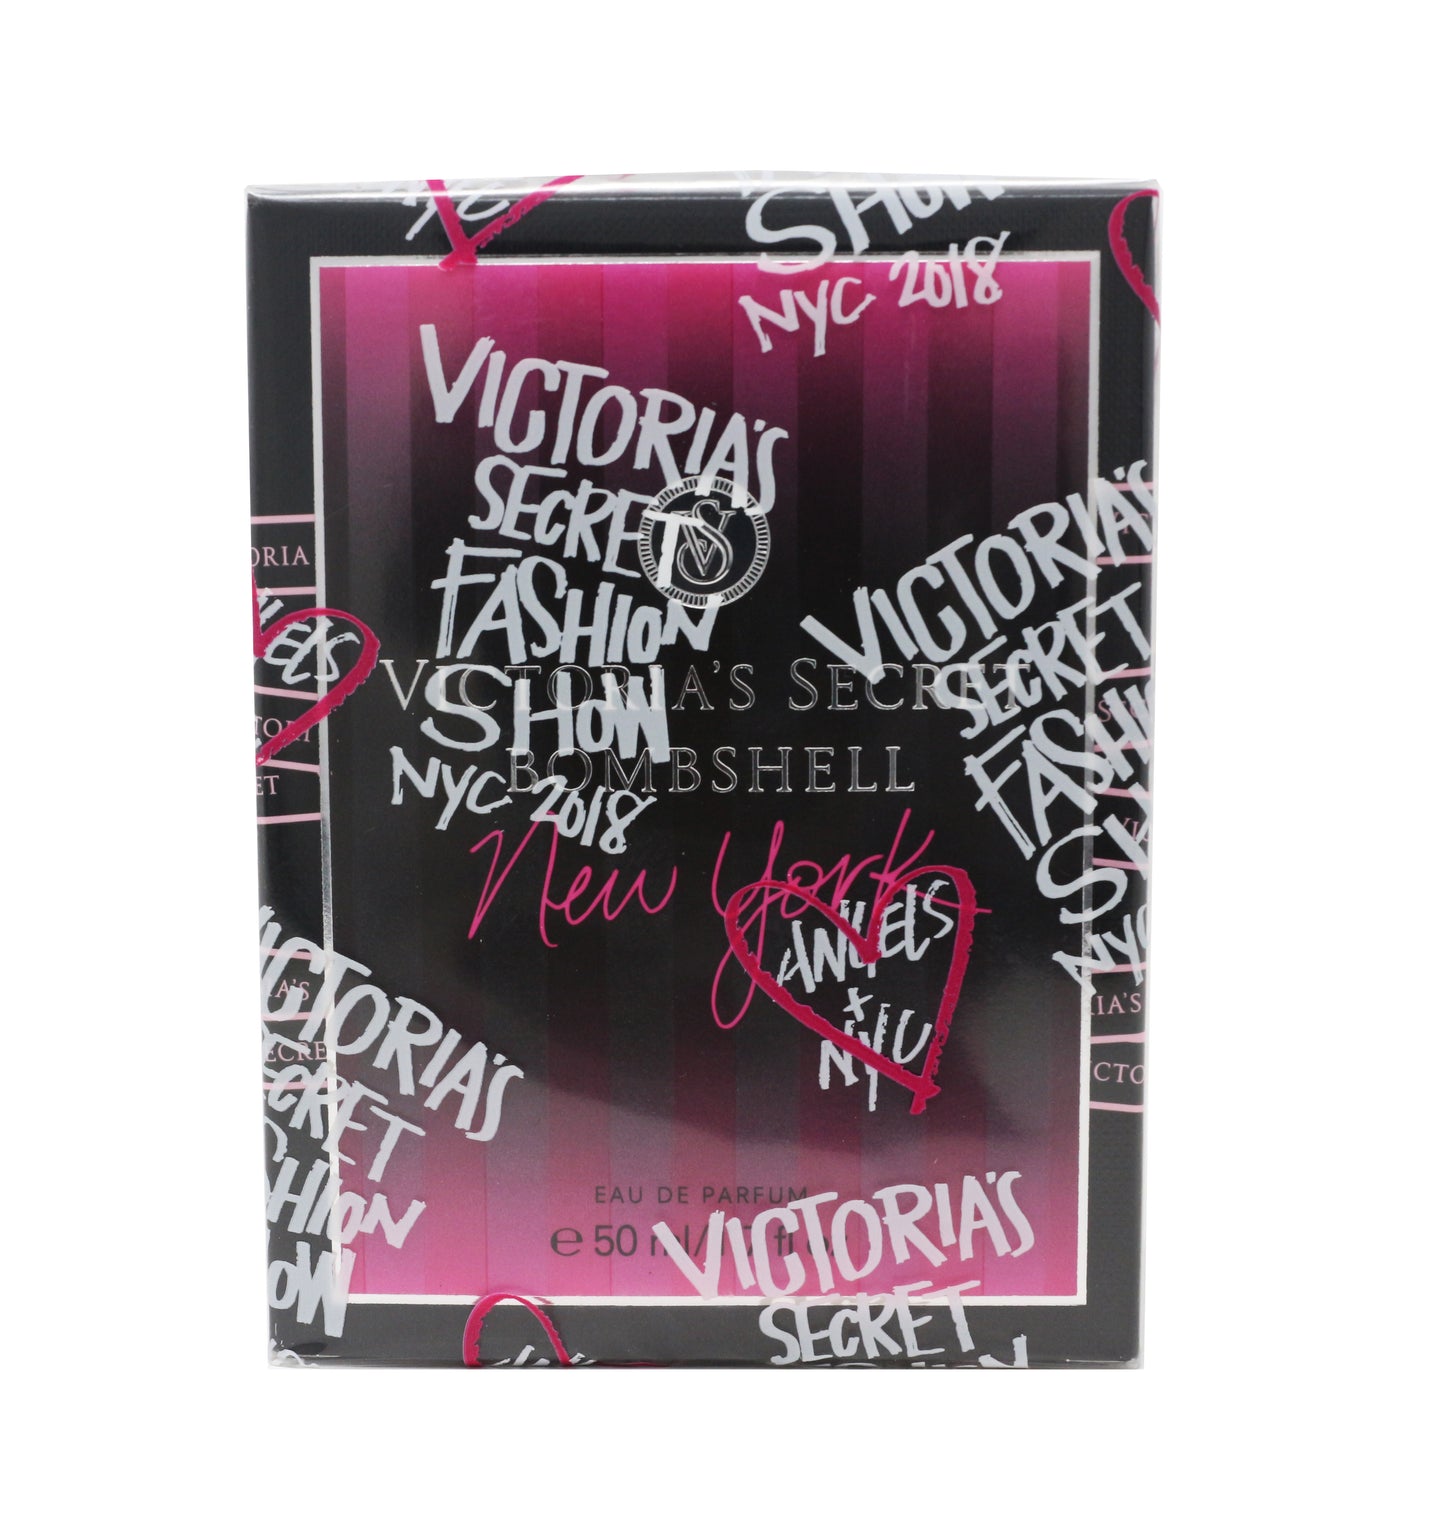 Victoria's Secret Bombshell New York Fashion Show 2018 Eau De Parfum 1.7oz New